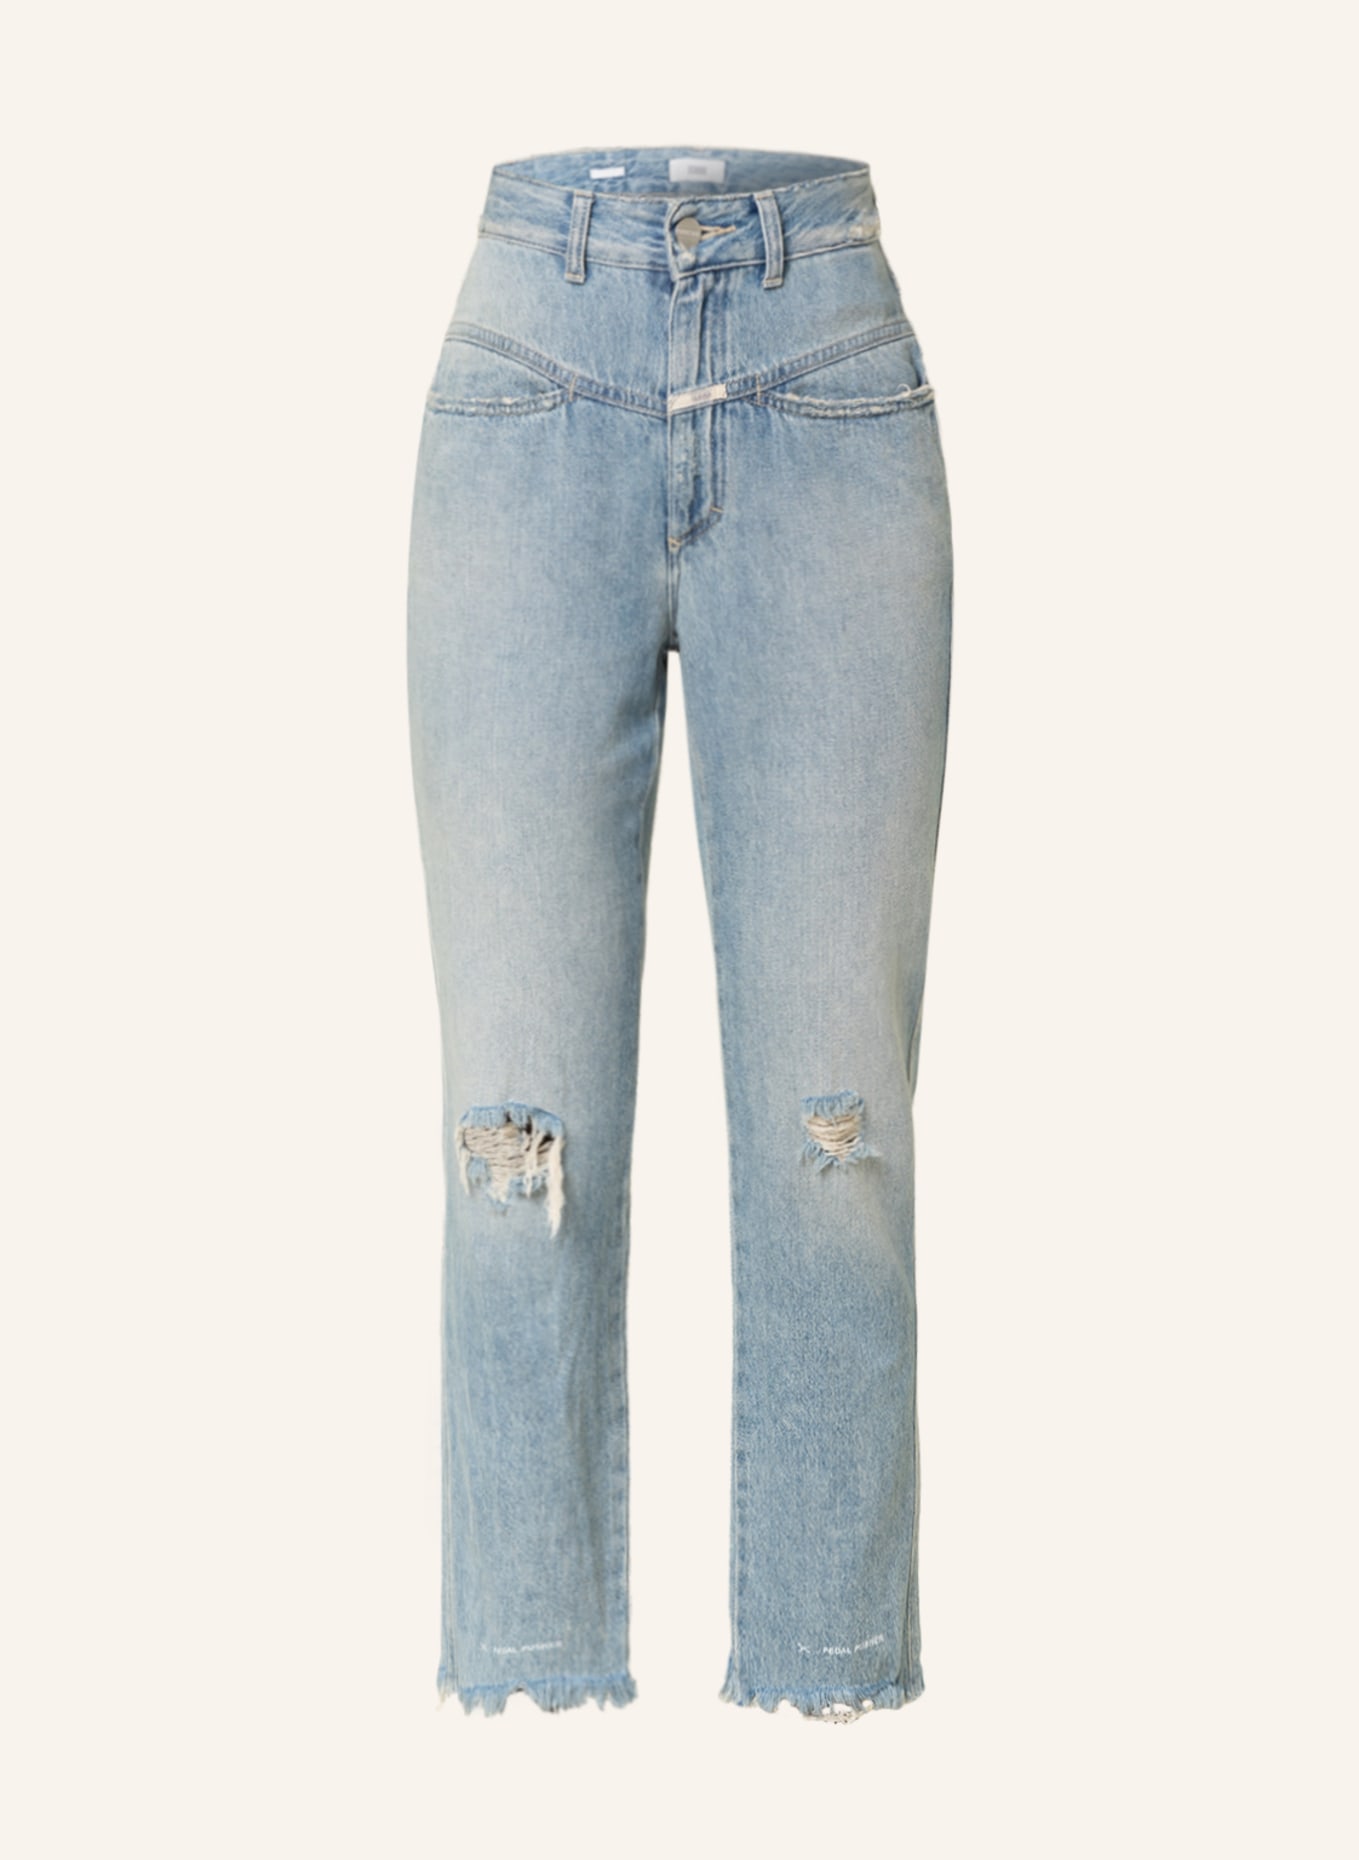 CLOSED Jeans PEDAL PUSHER, Farbe: LBL Light Blue (Bild 1)